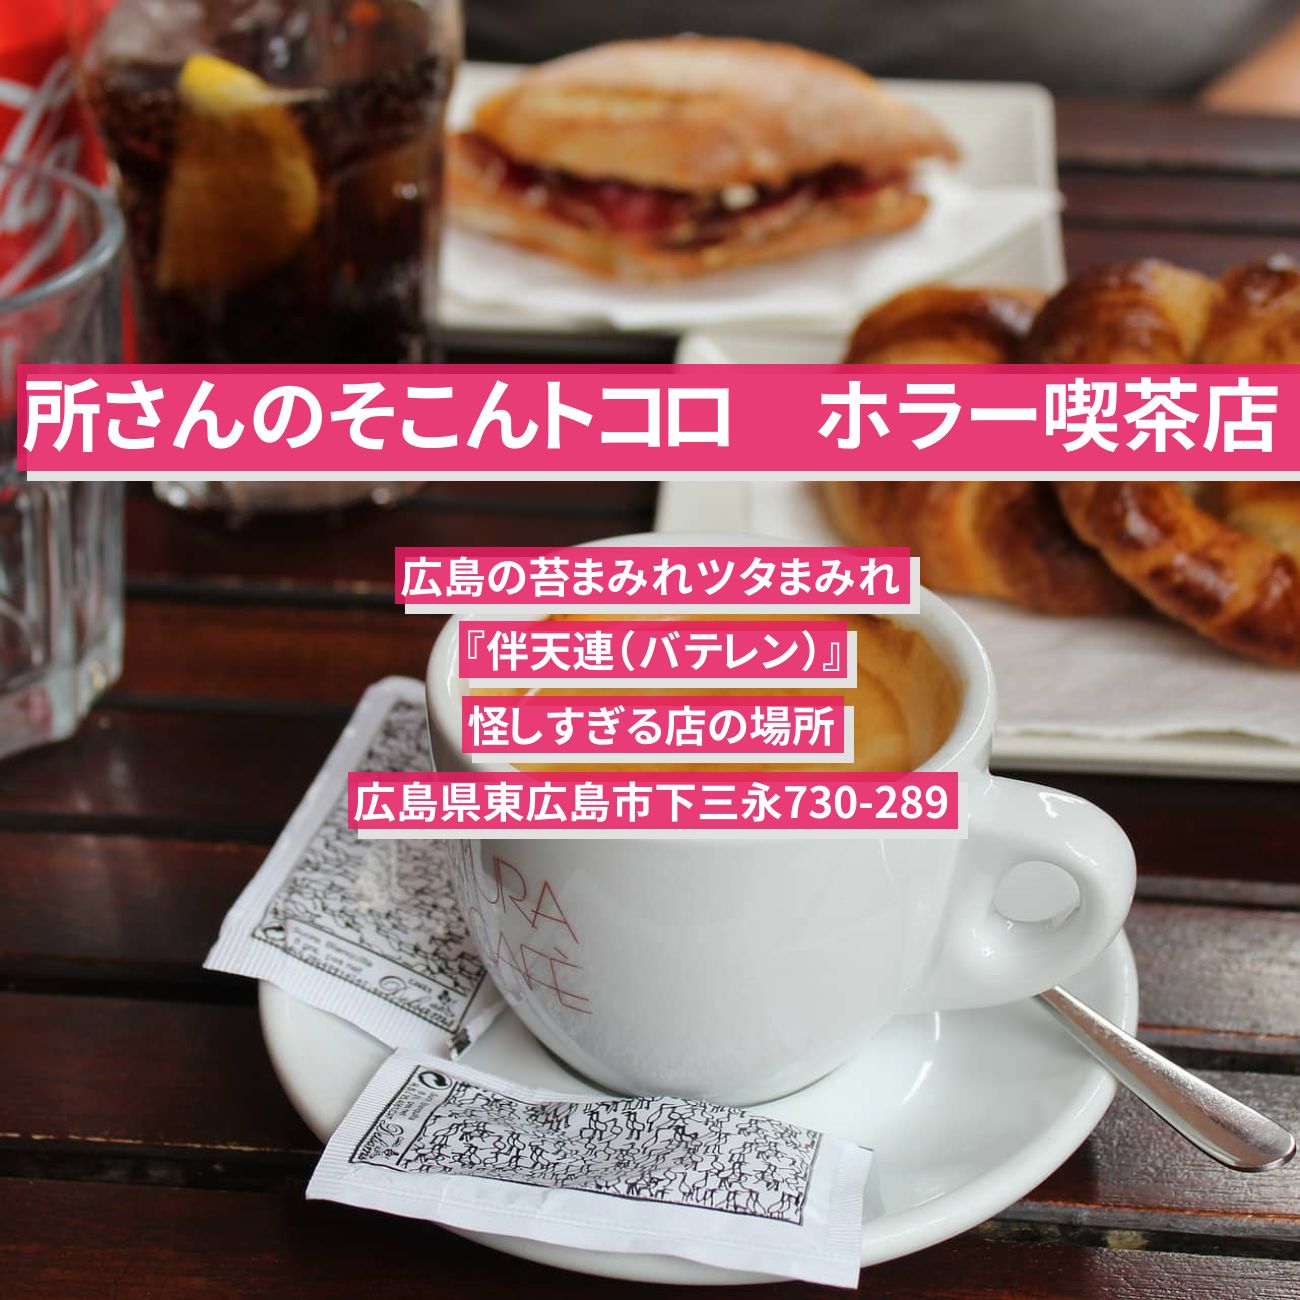 【所さんのそこんトコロ】ホラー喫茶・広島の苔まみれツタまみれ『伴天連（バテレン）』怪しすぎる店の場所